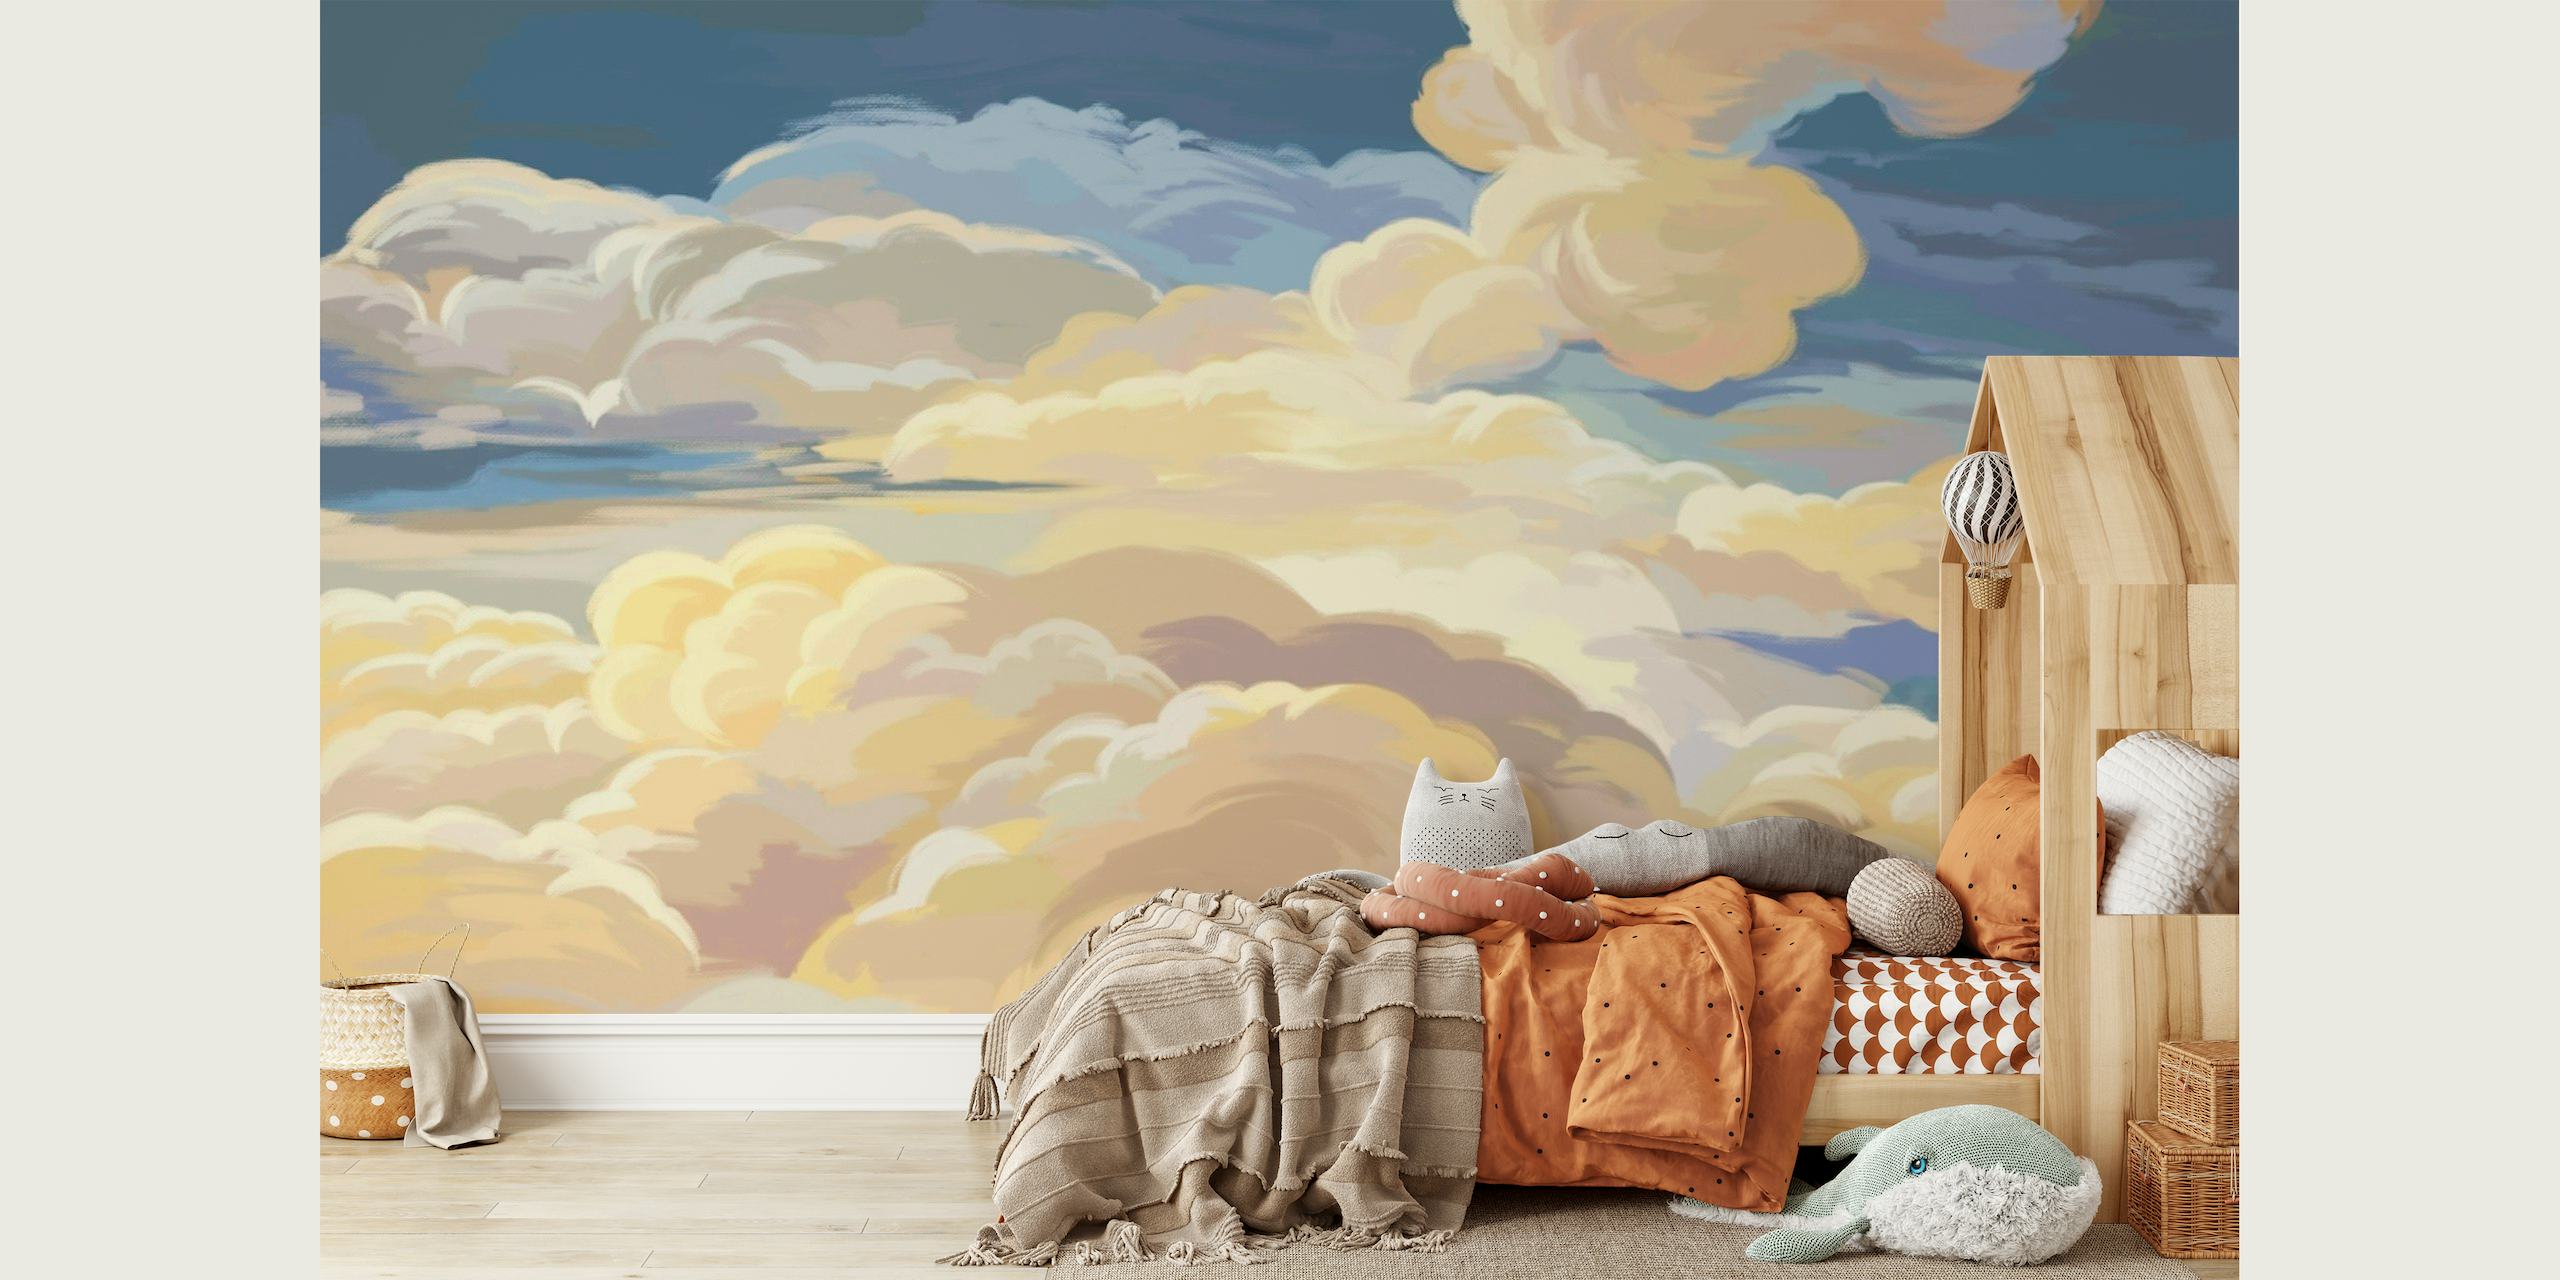 Sunset clouds art behang